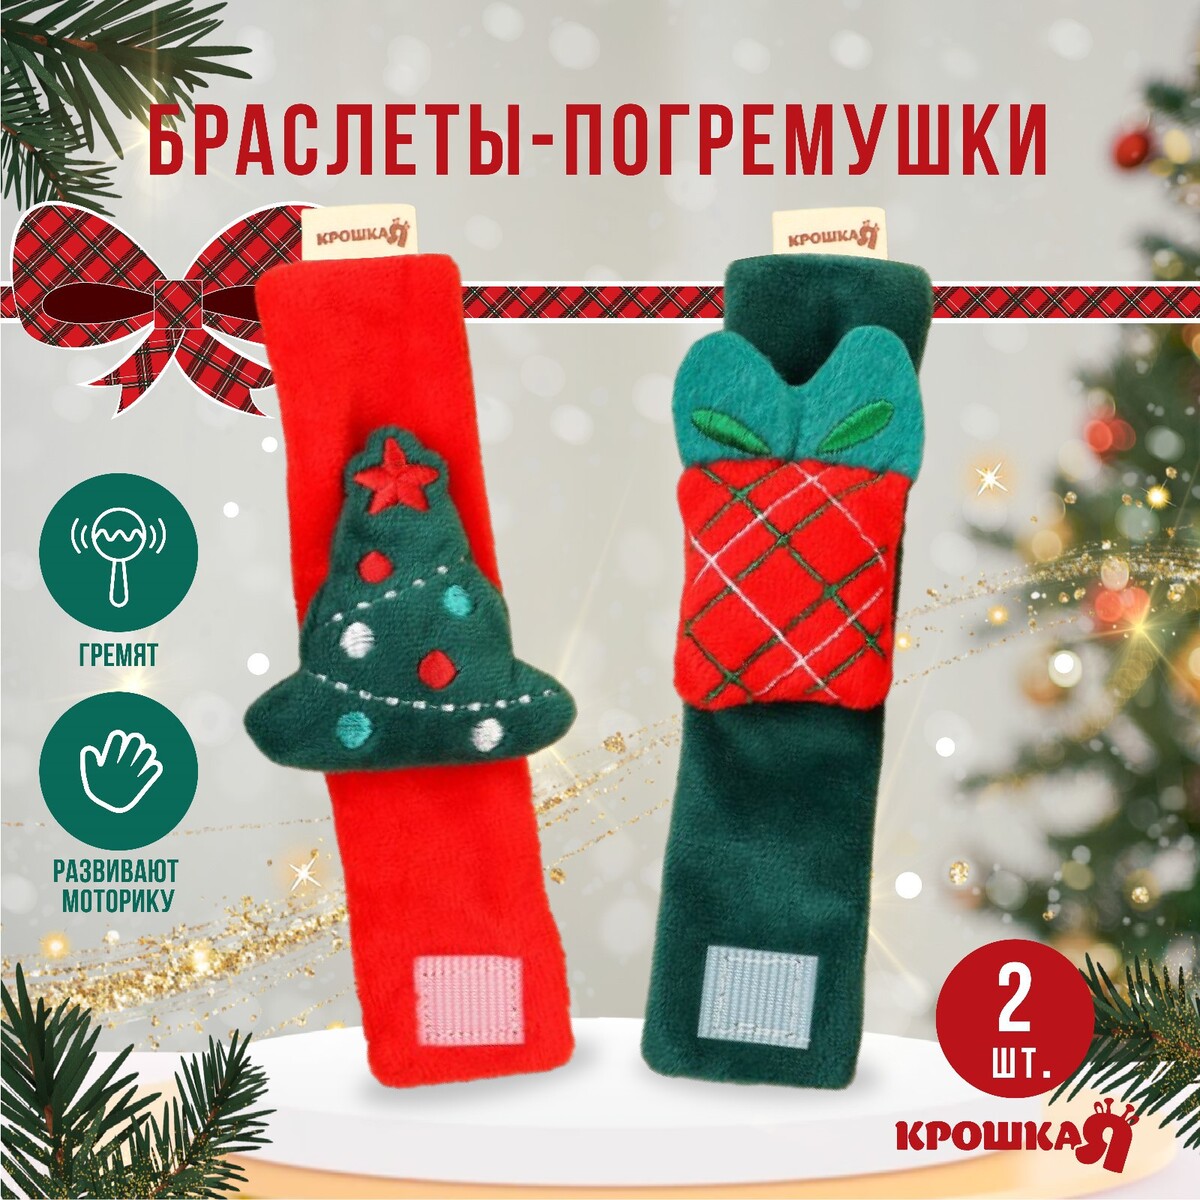 Подарочный набор новогодний: браслетики - погремушки набор наклеек новогодний зверята в красном шарфике 34 3 х 35 6 см